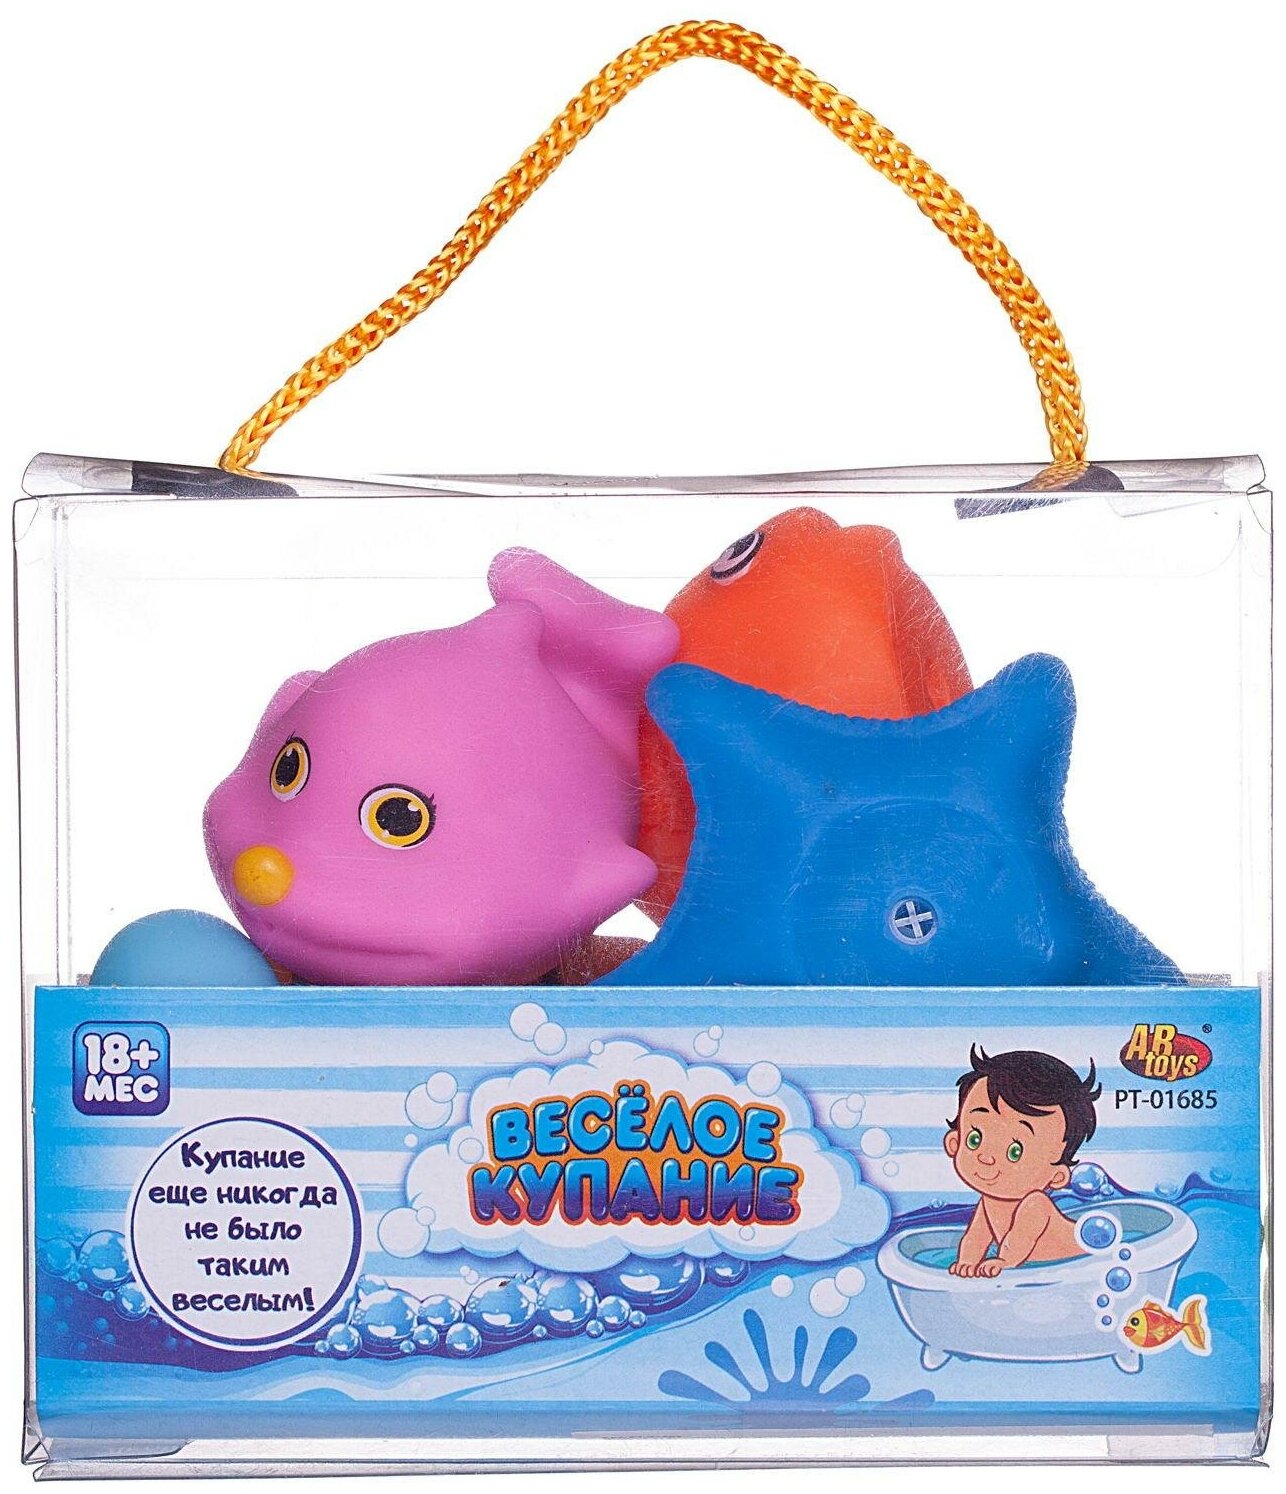 Набор резиновых игрушек для ванной Abtoys Веселое купание 8 предметов (набор 1), в сумке PT-01685